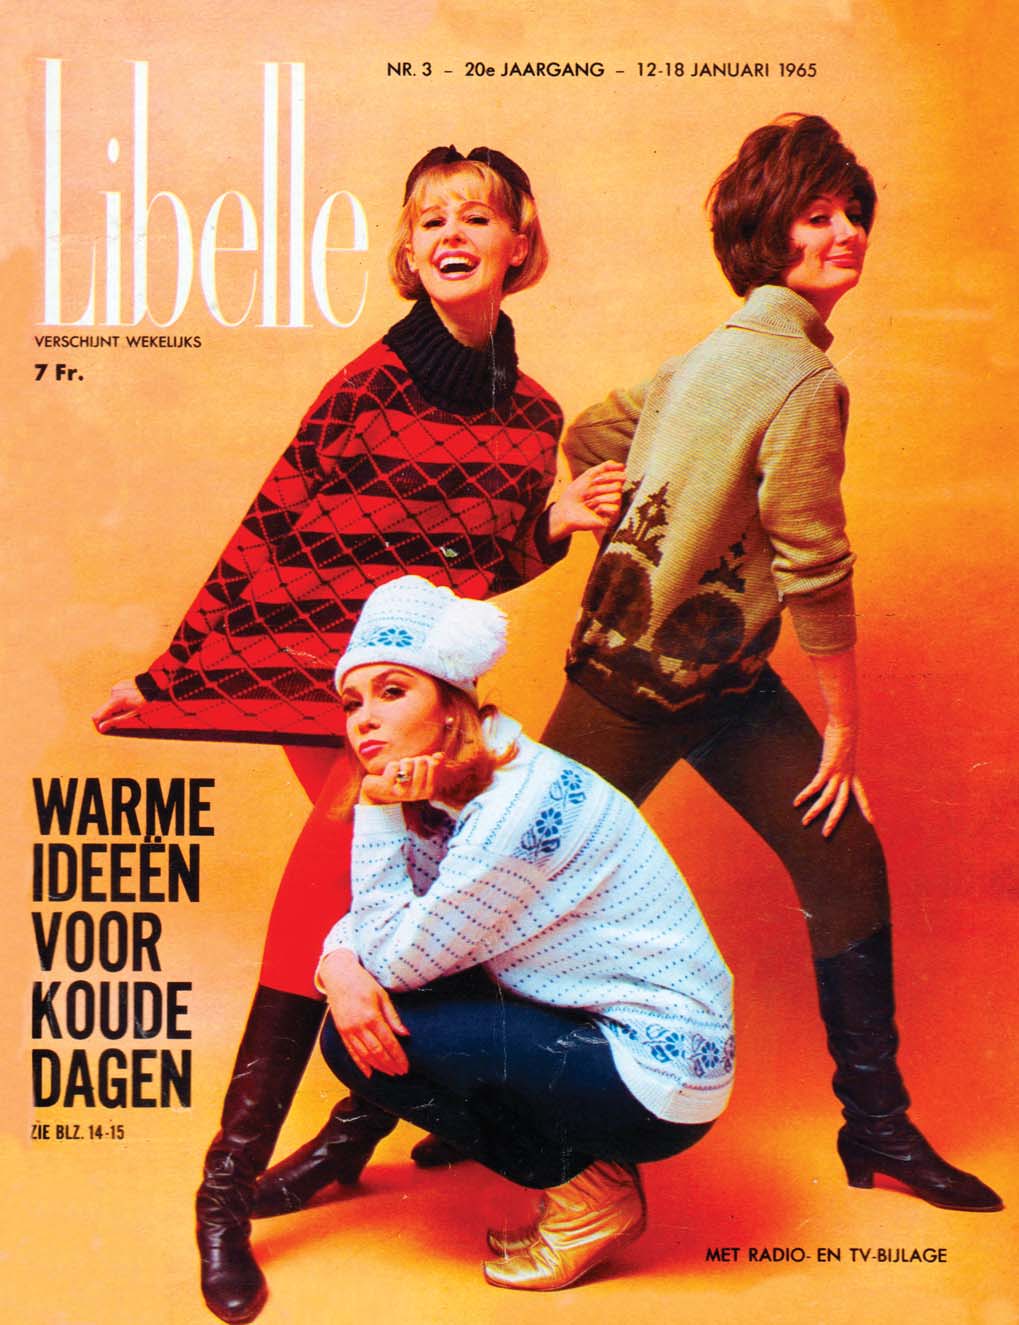 Gang Contractie conservatief magazines,tijdschrift LIBELLE - ontdek oude magazines, gedigitaliseerd